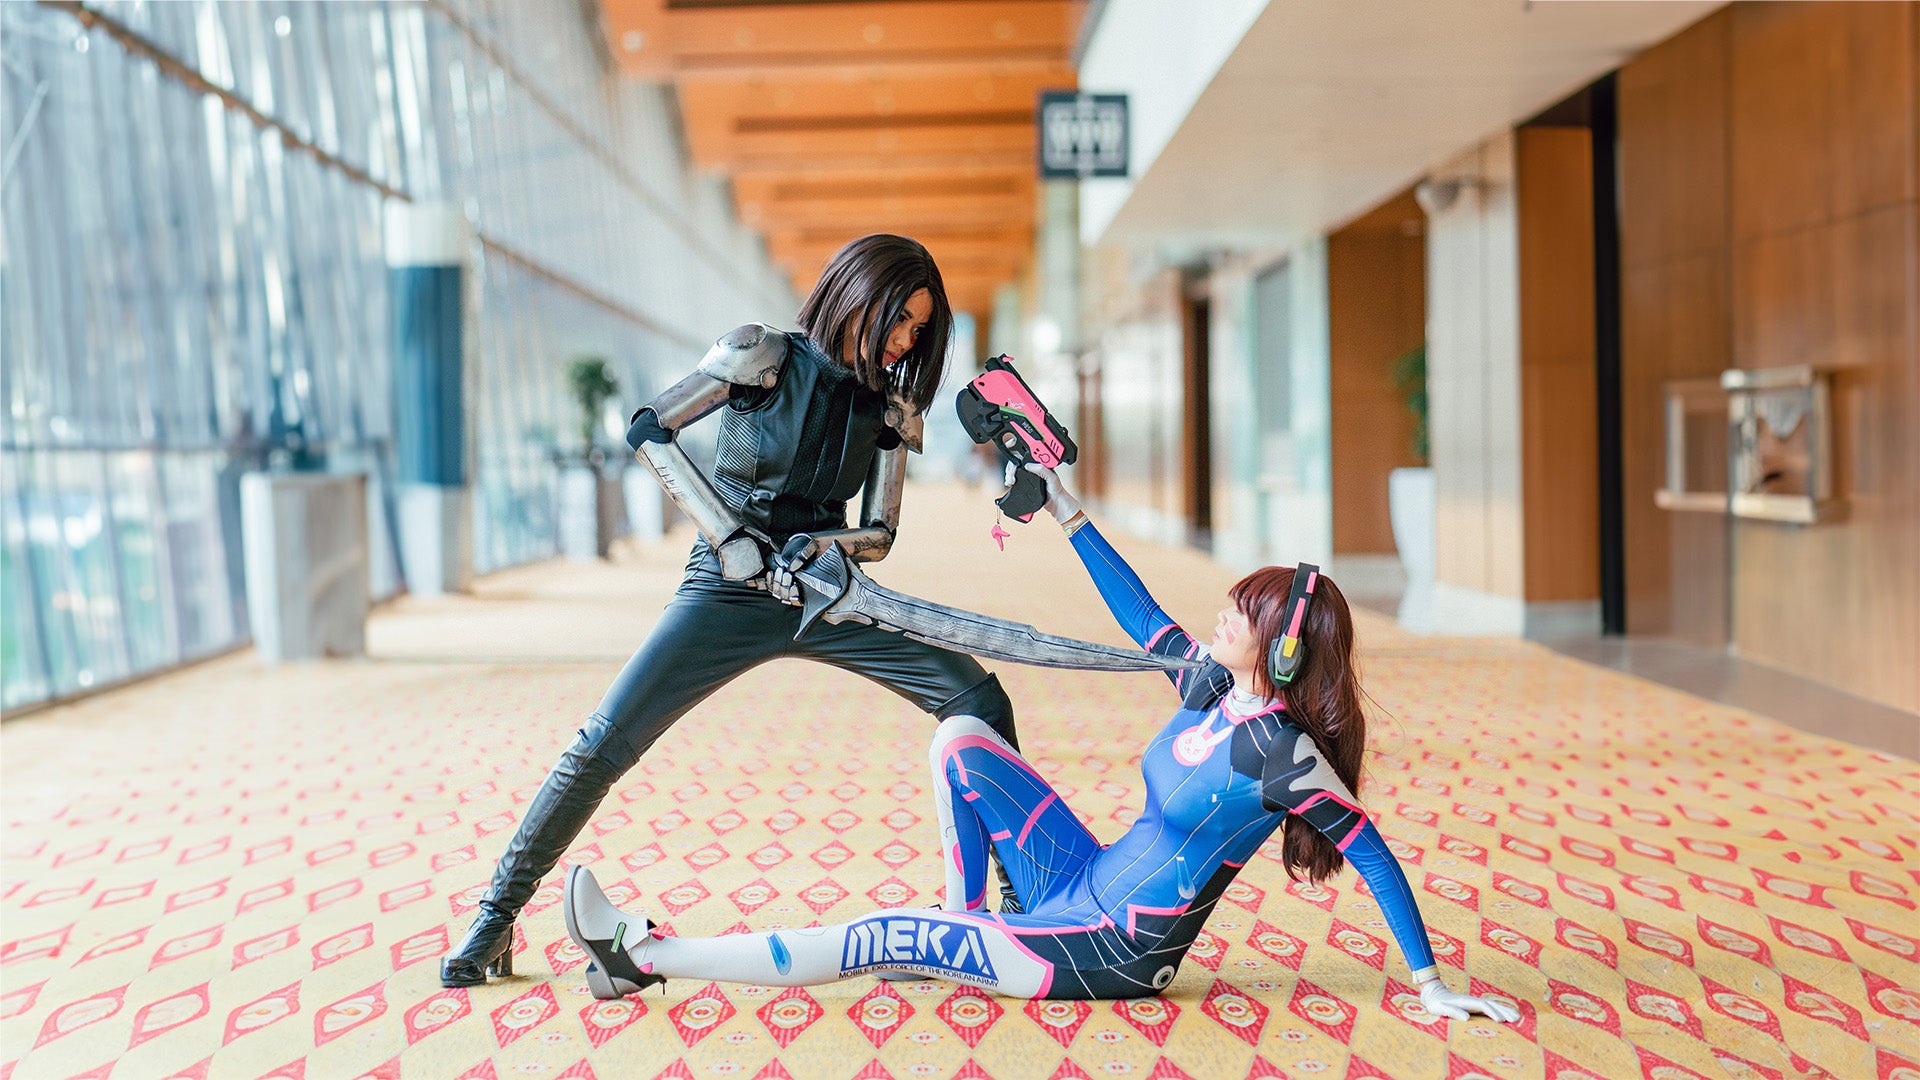 Zwei Frauen, die Charaktere aus Videospielen Cosplayen, kämpfen miteinander. Eine Frau liegt auf dem Boden und richtet ihre Waffe auf die stehende Frau.